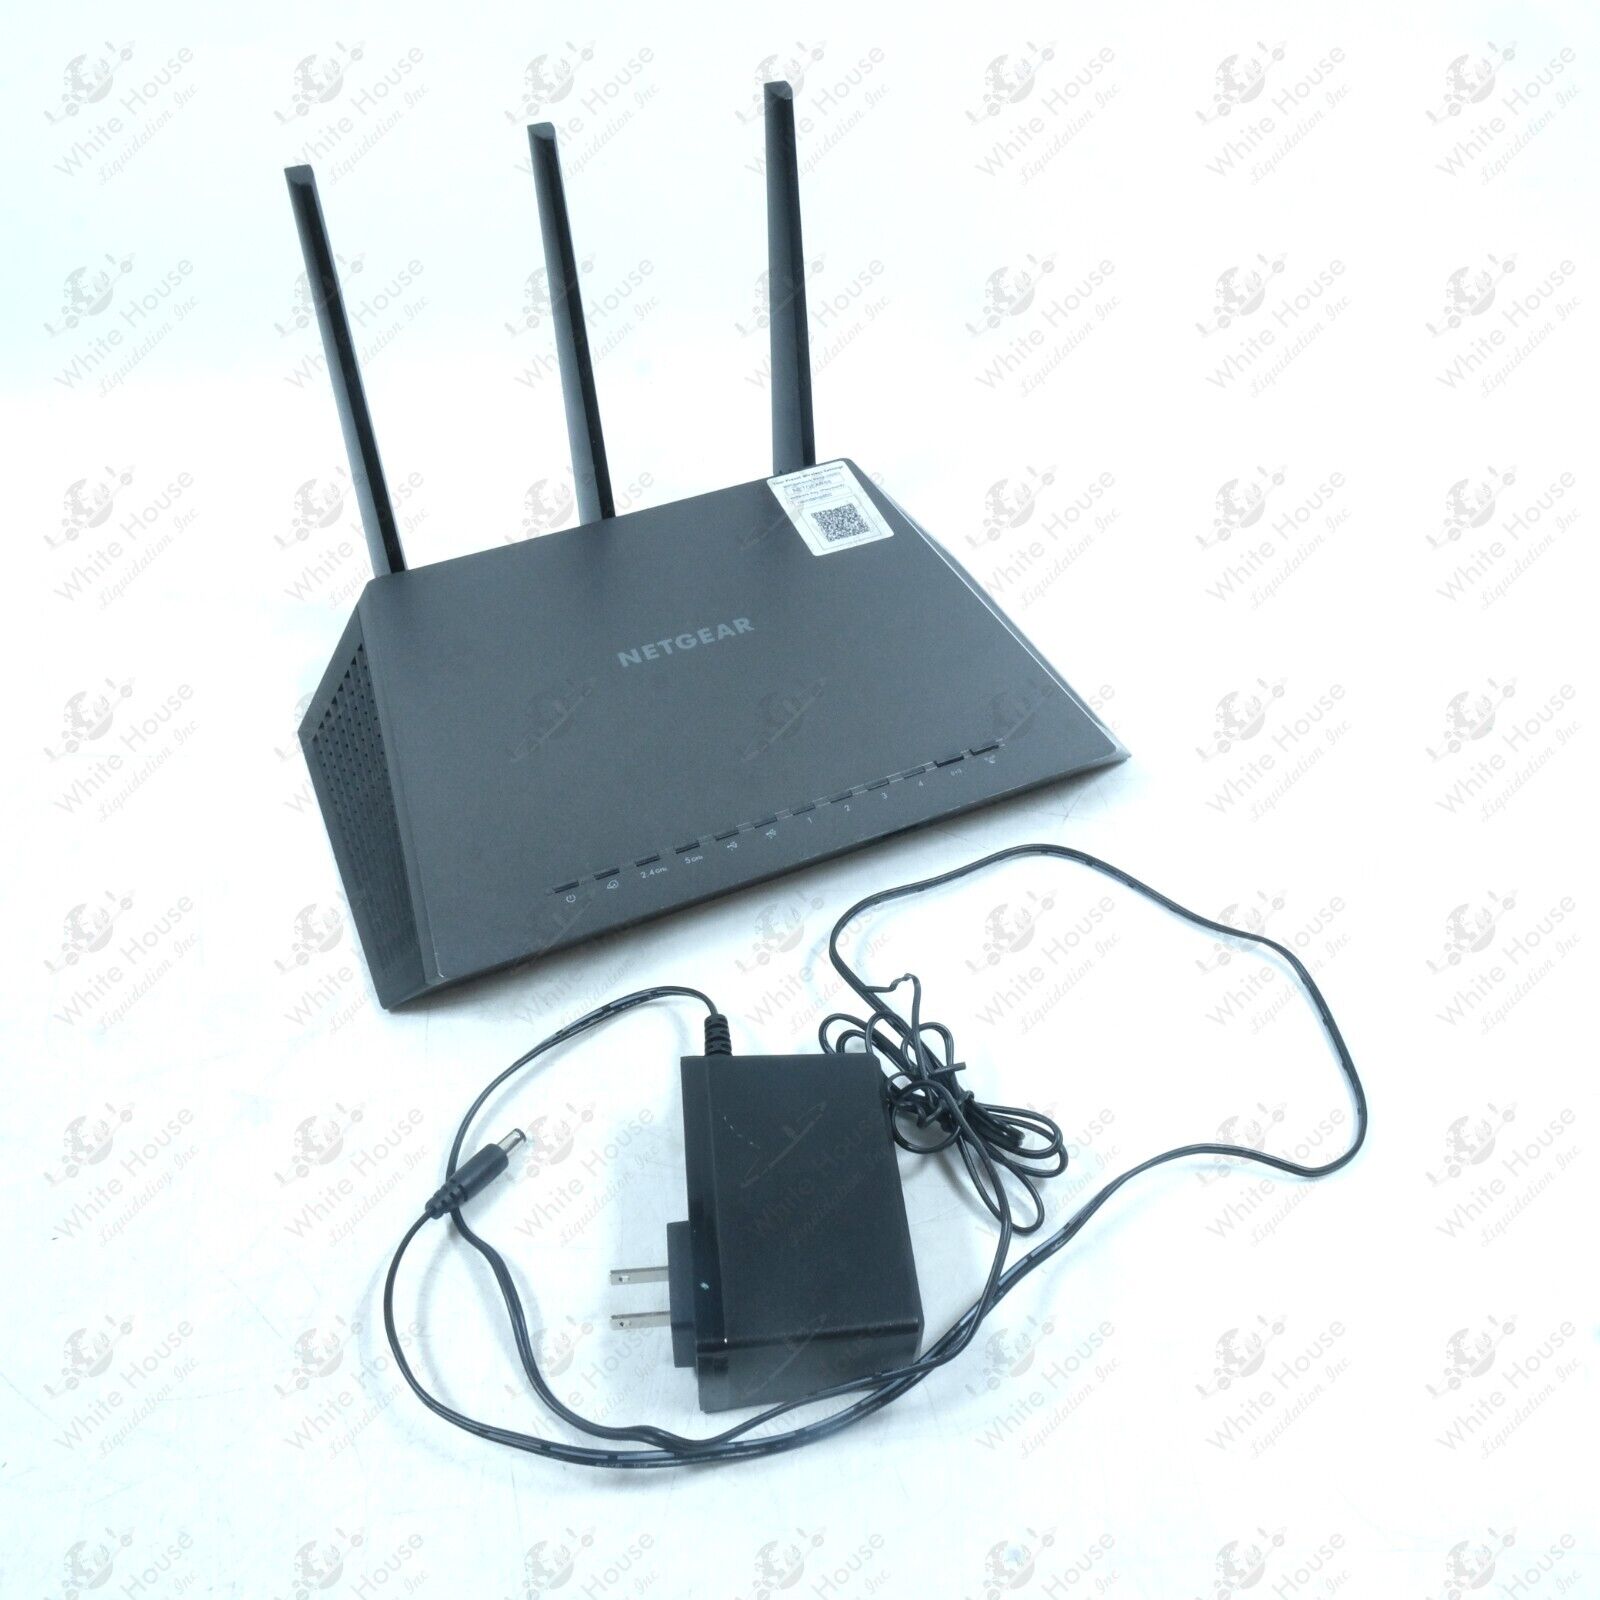 NETGEAR - Nighthawk R7000 AC1900 WiFi Router - Black